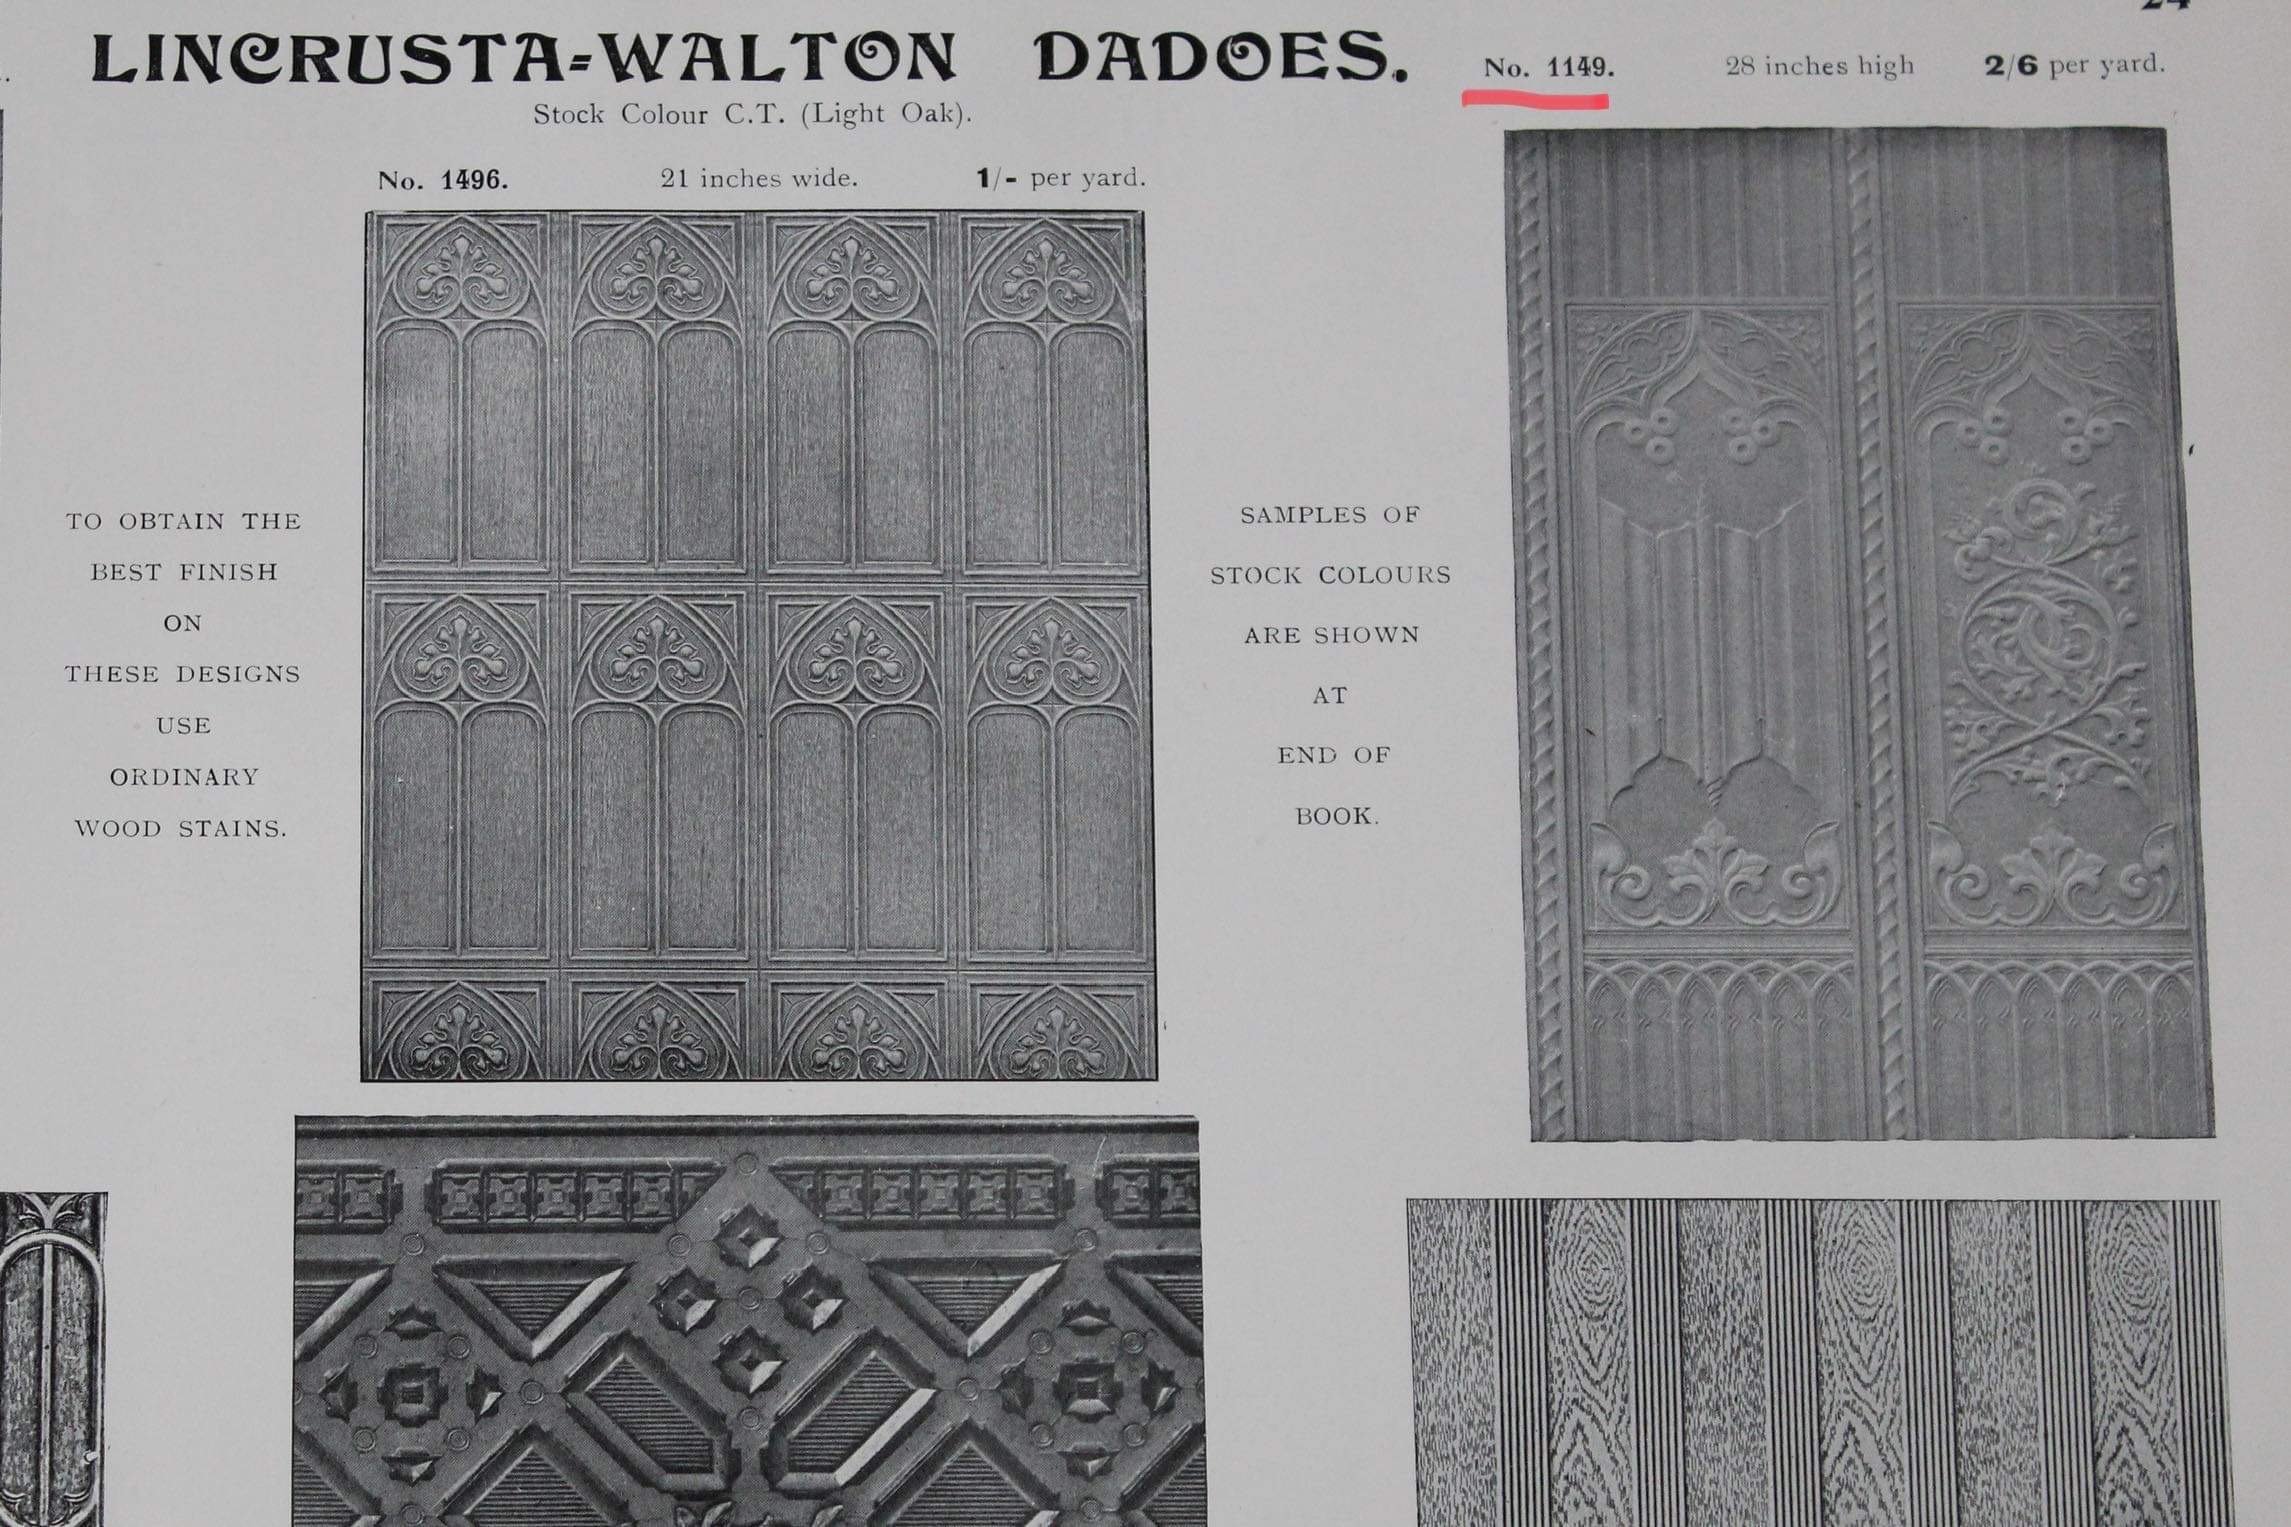 Archive catalogue image Lincrusta-Walton dado designs c.1890